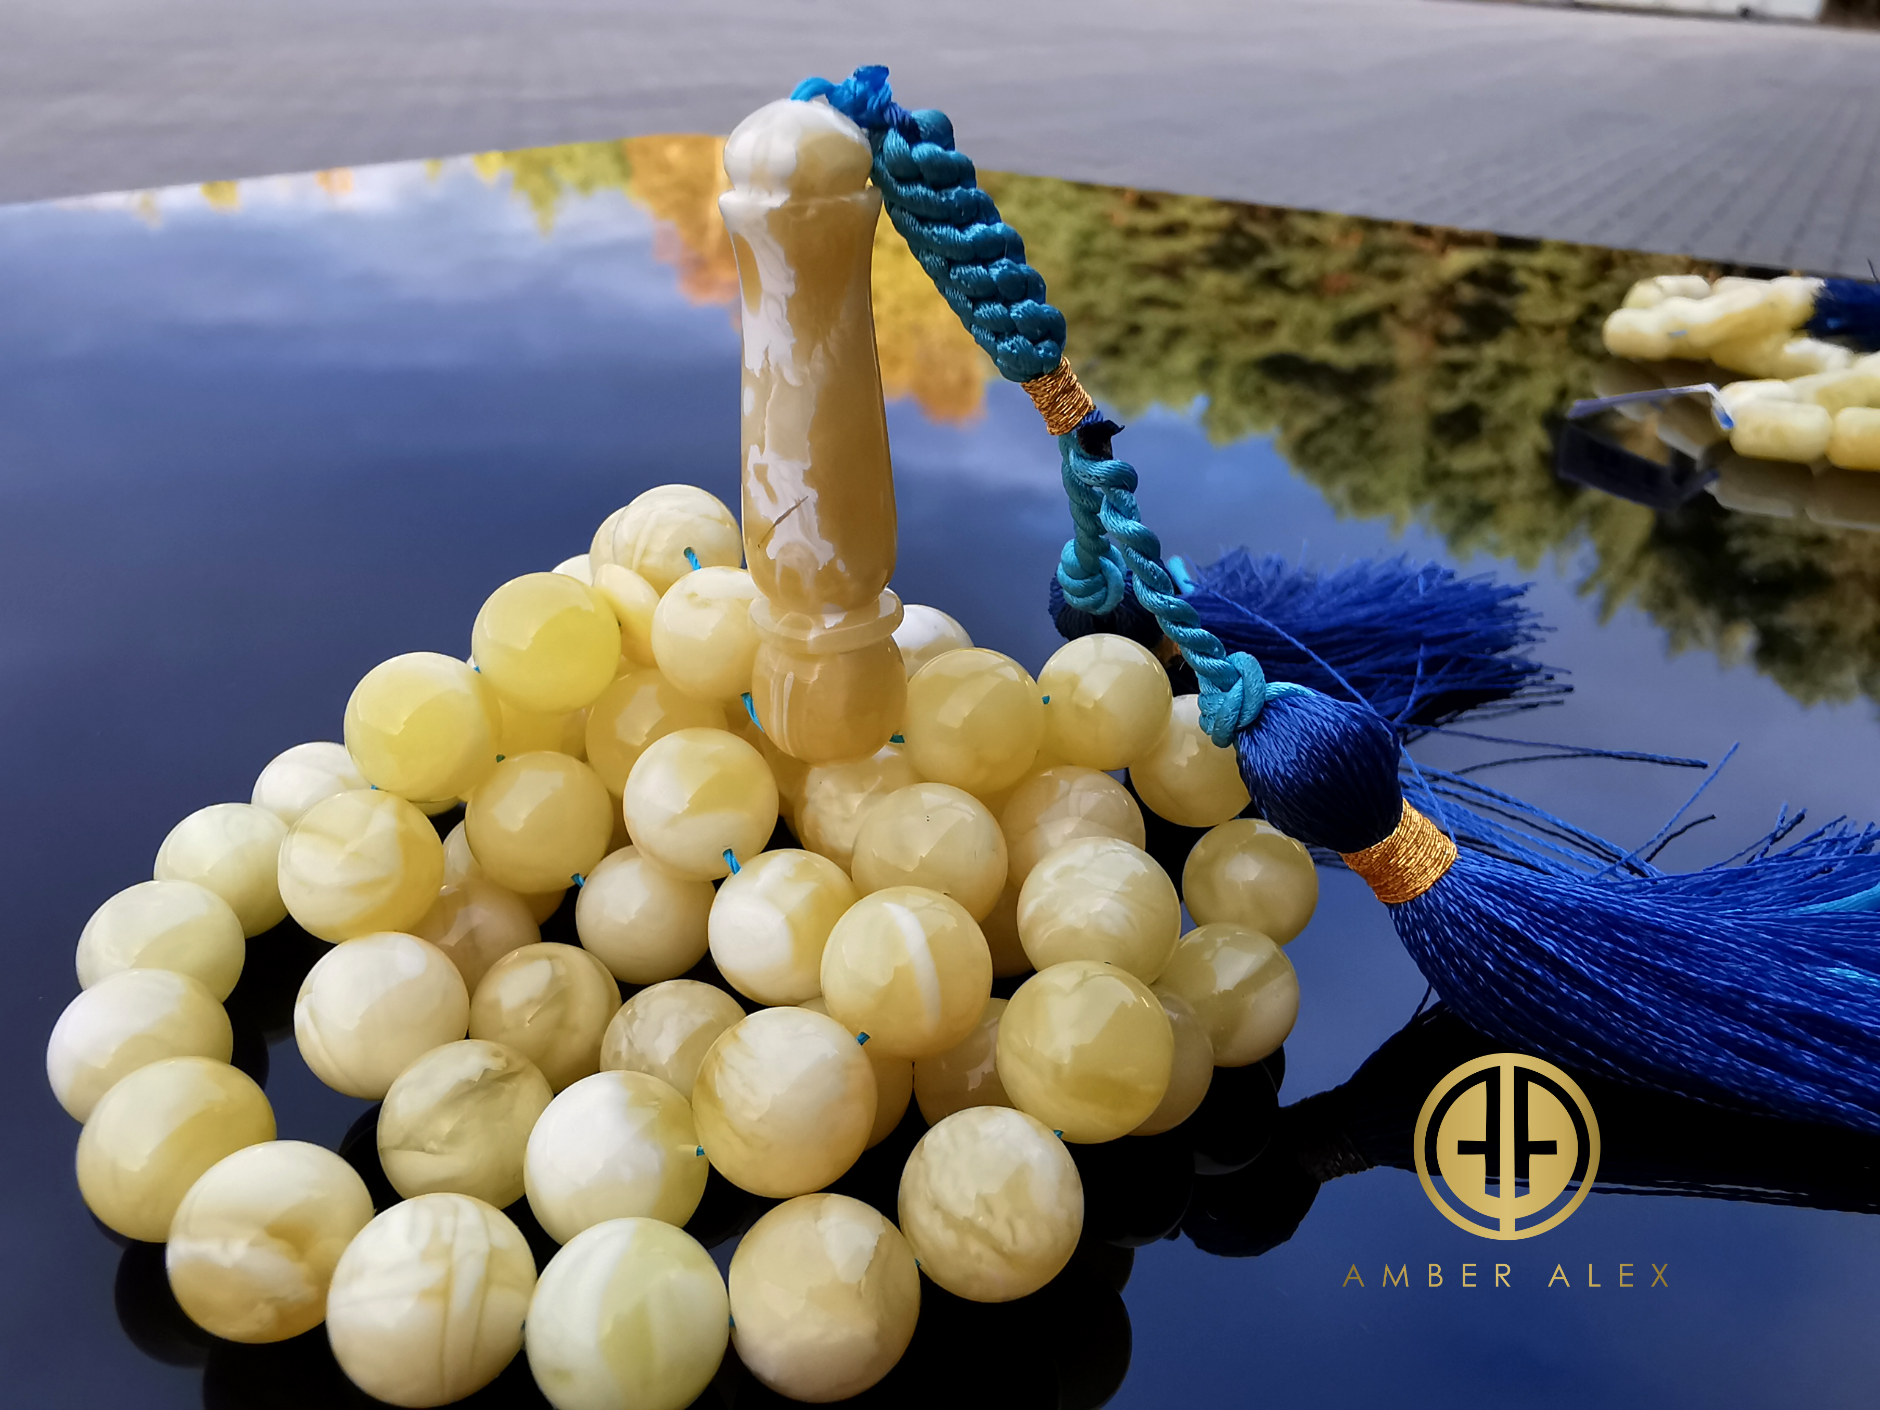 White With Yellow Amber Round Shape 9.5 mm Islamic Prayer Beads